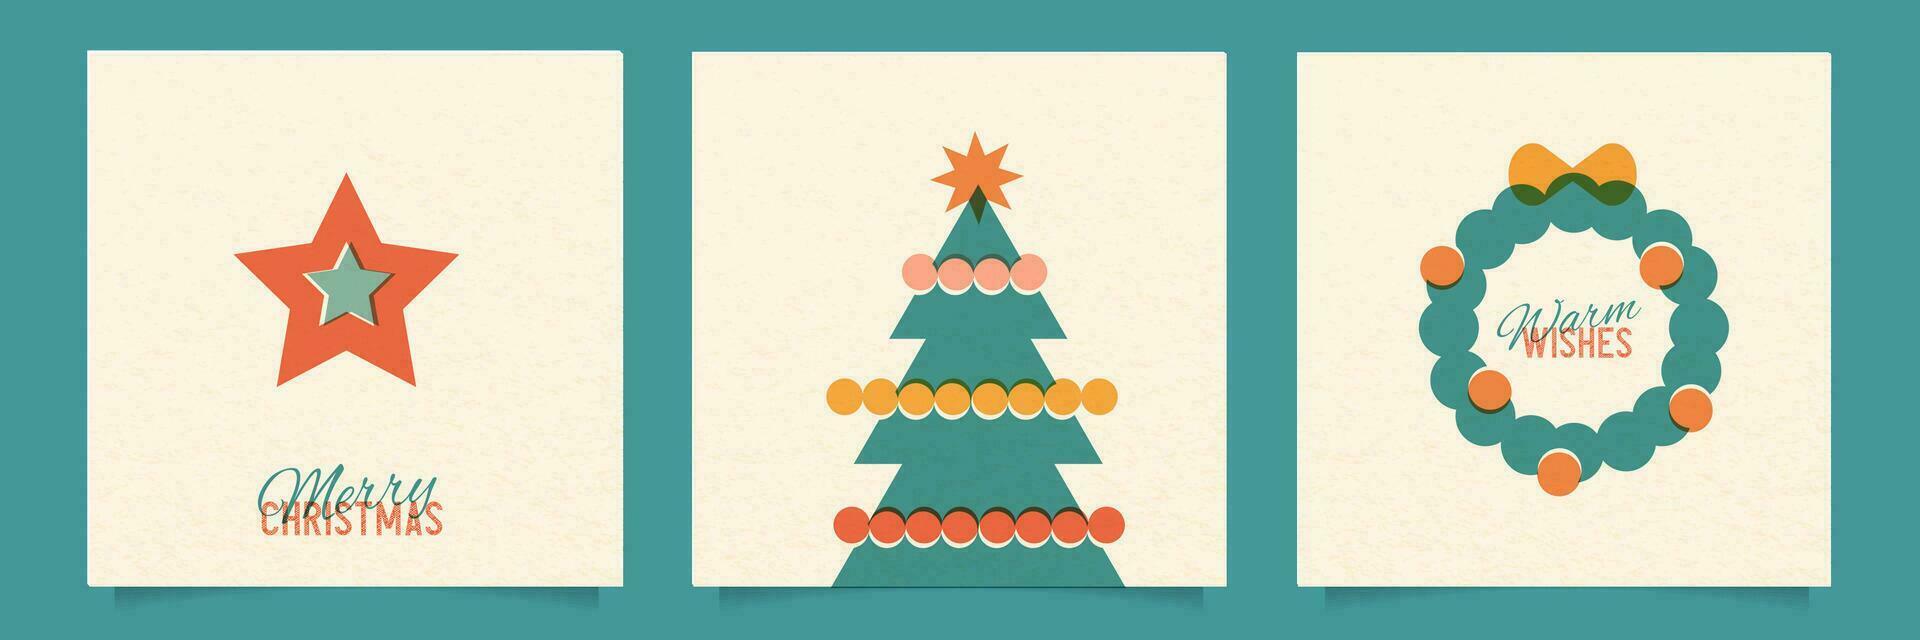 Weihnachten Risograph Stil Plakate einstellen mit abstrakt geometrisch Formen - - Weihnachten Baum, Stern, Tanne Kranz. Bauhaus retro Bilder. Vektor Illustrator.